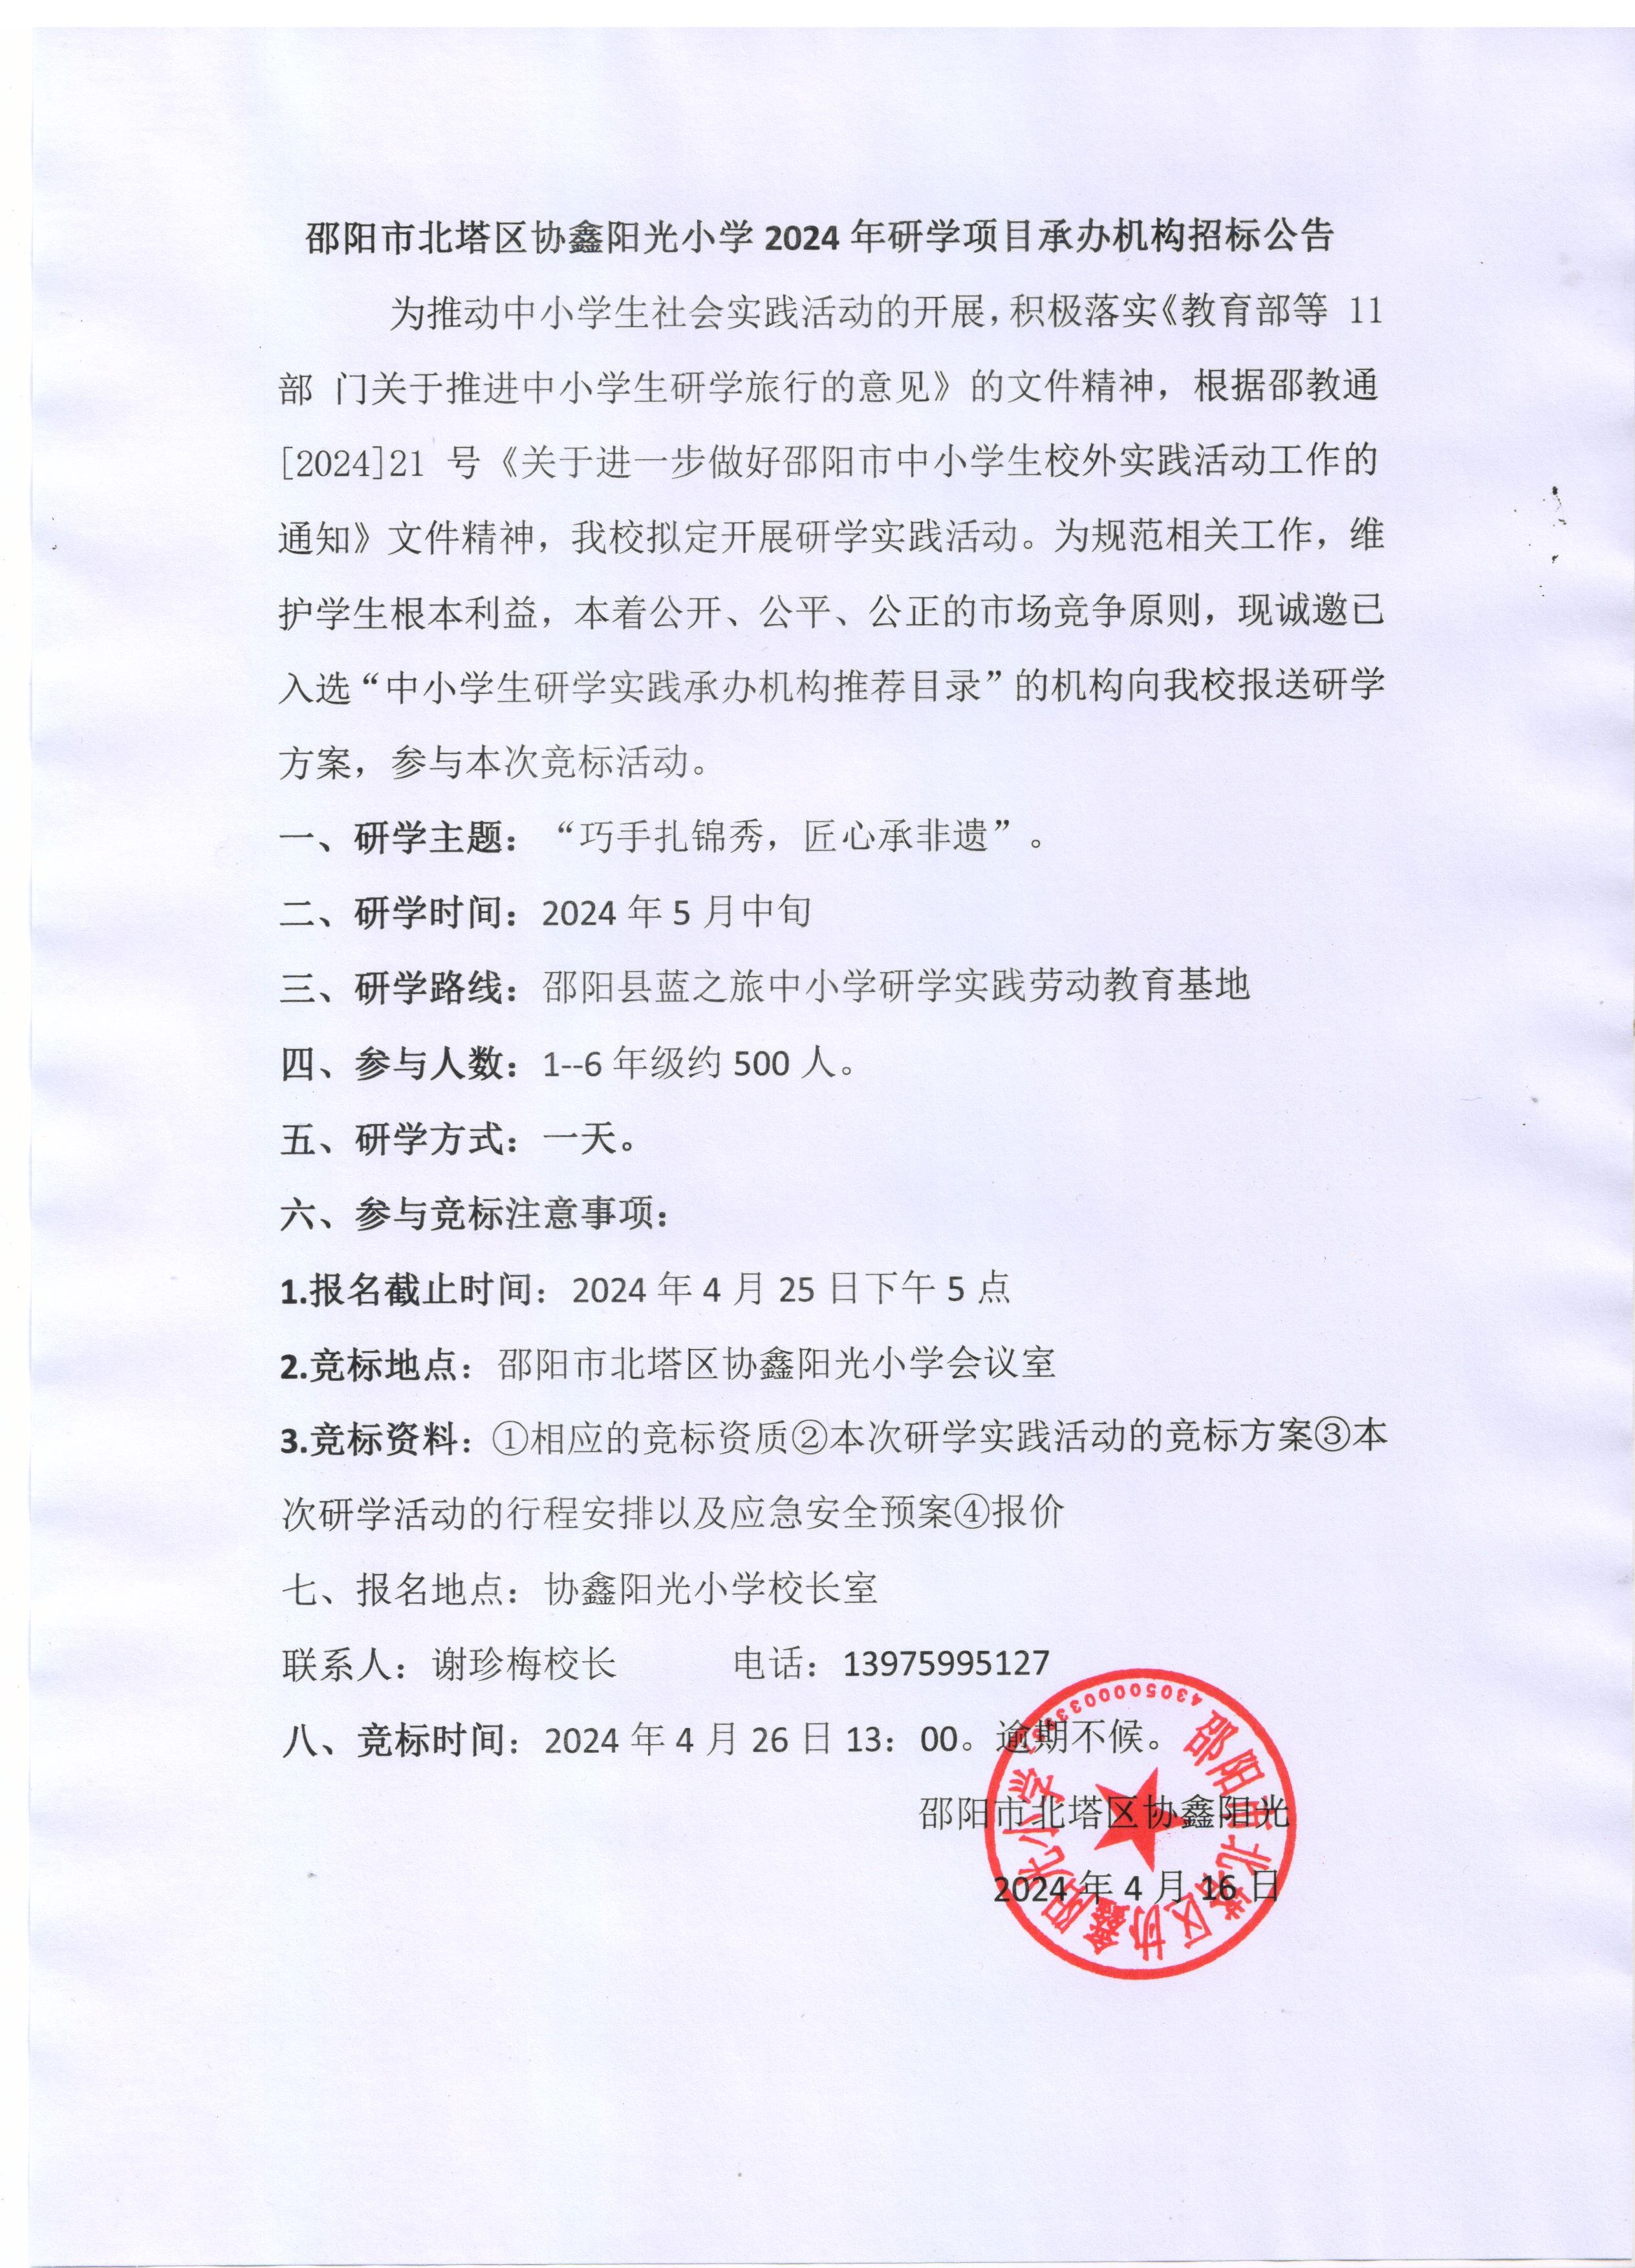 邵阳市北塔区协鑫阳光小学2024年研学项目承办机构招标公告(图1)